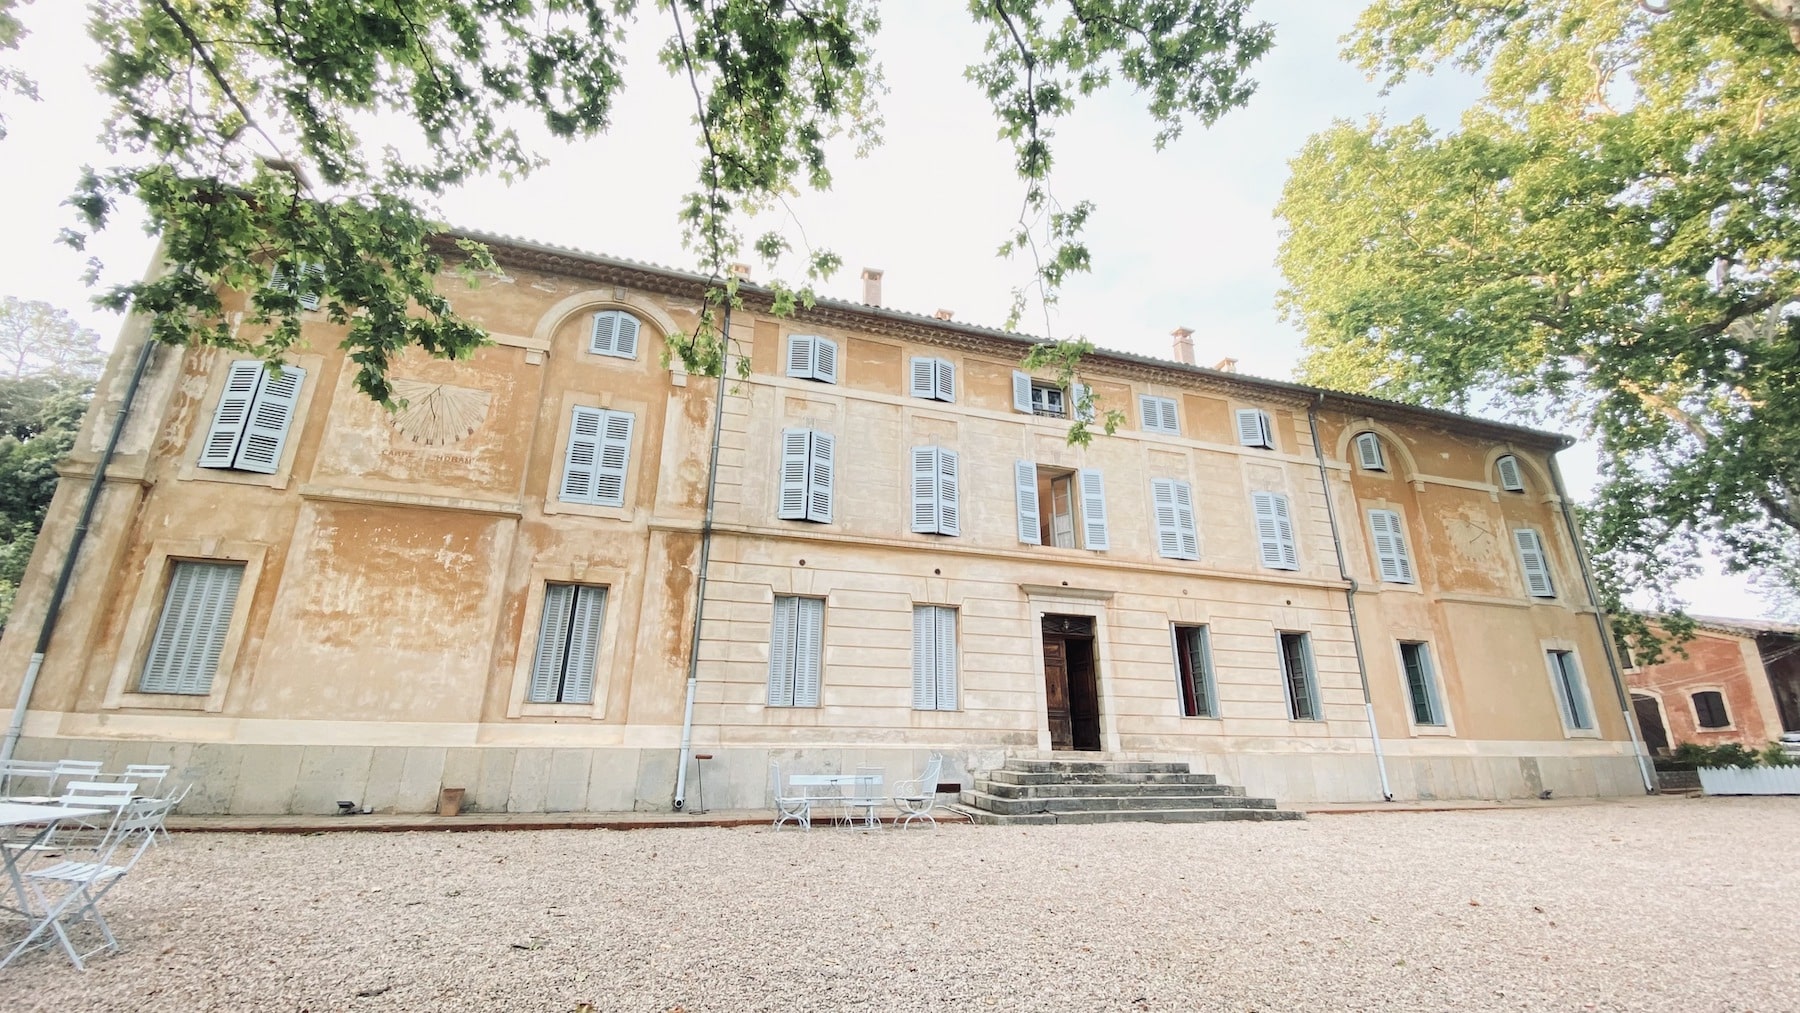 Rire en Vignes, Rire en Vignes revient pour sa neuvième édition au Château de Saint-Martin, Made in Marseille